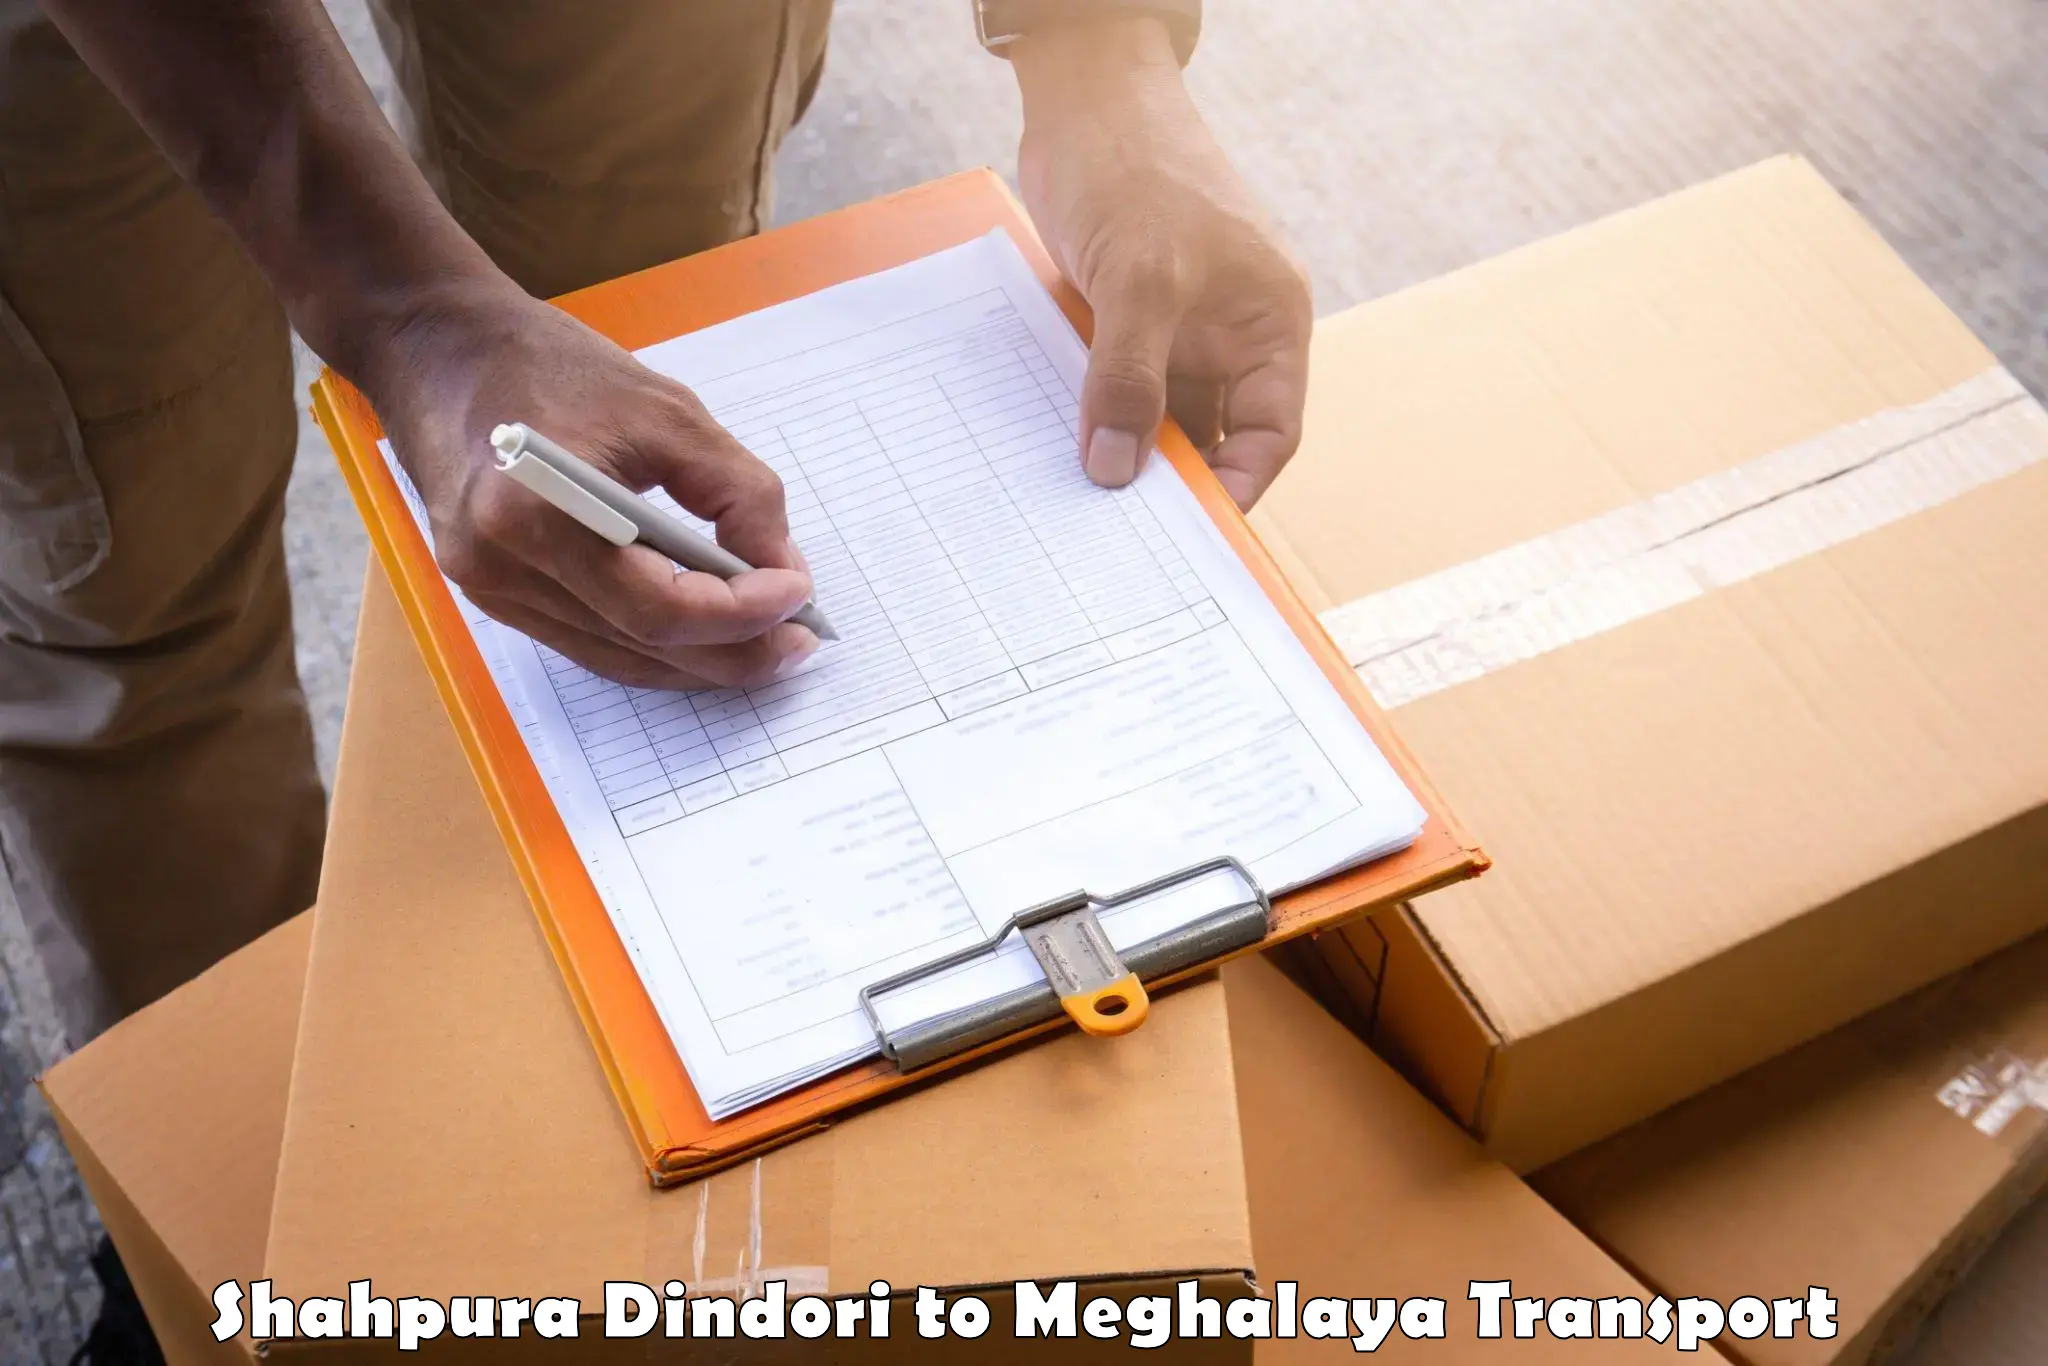 Container transport service Shahpura Dindori to Williamnagar